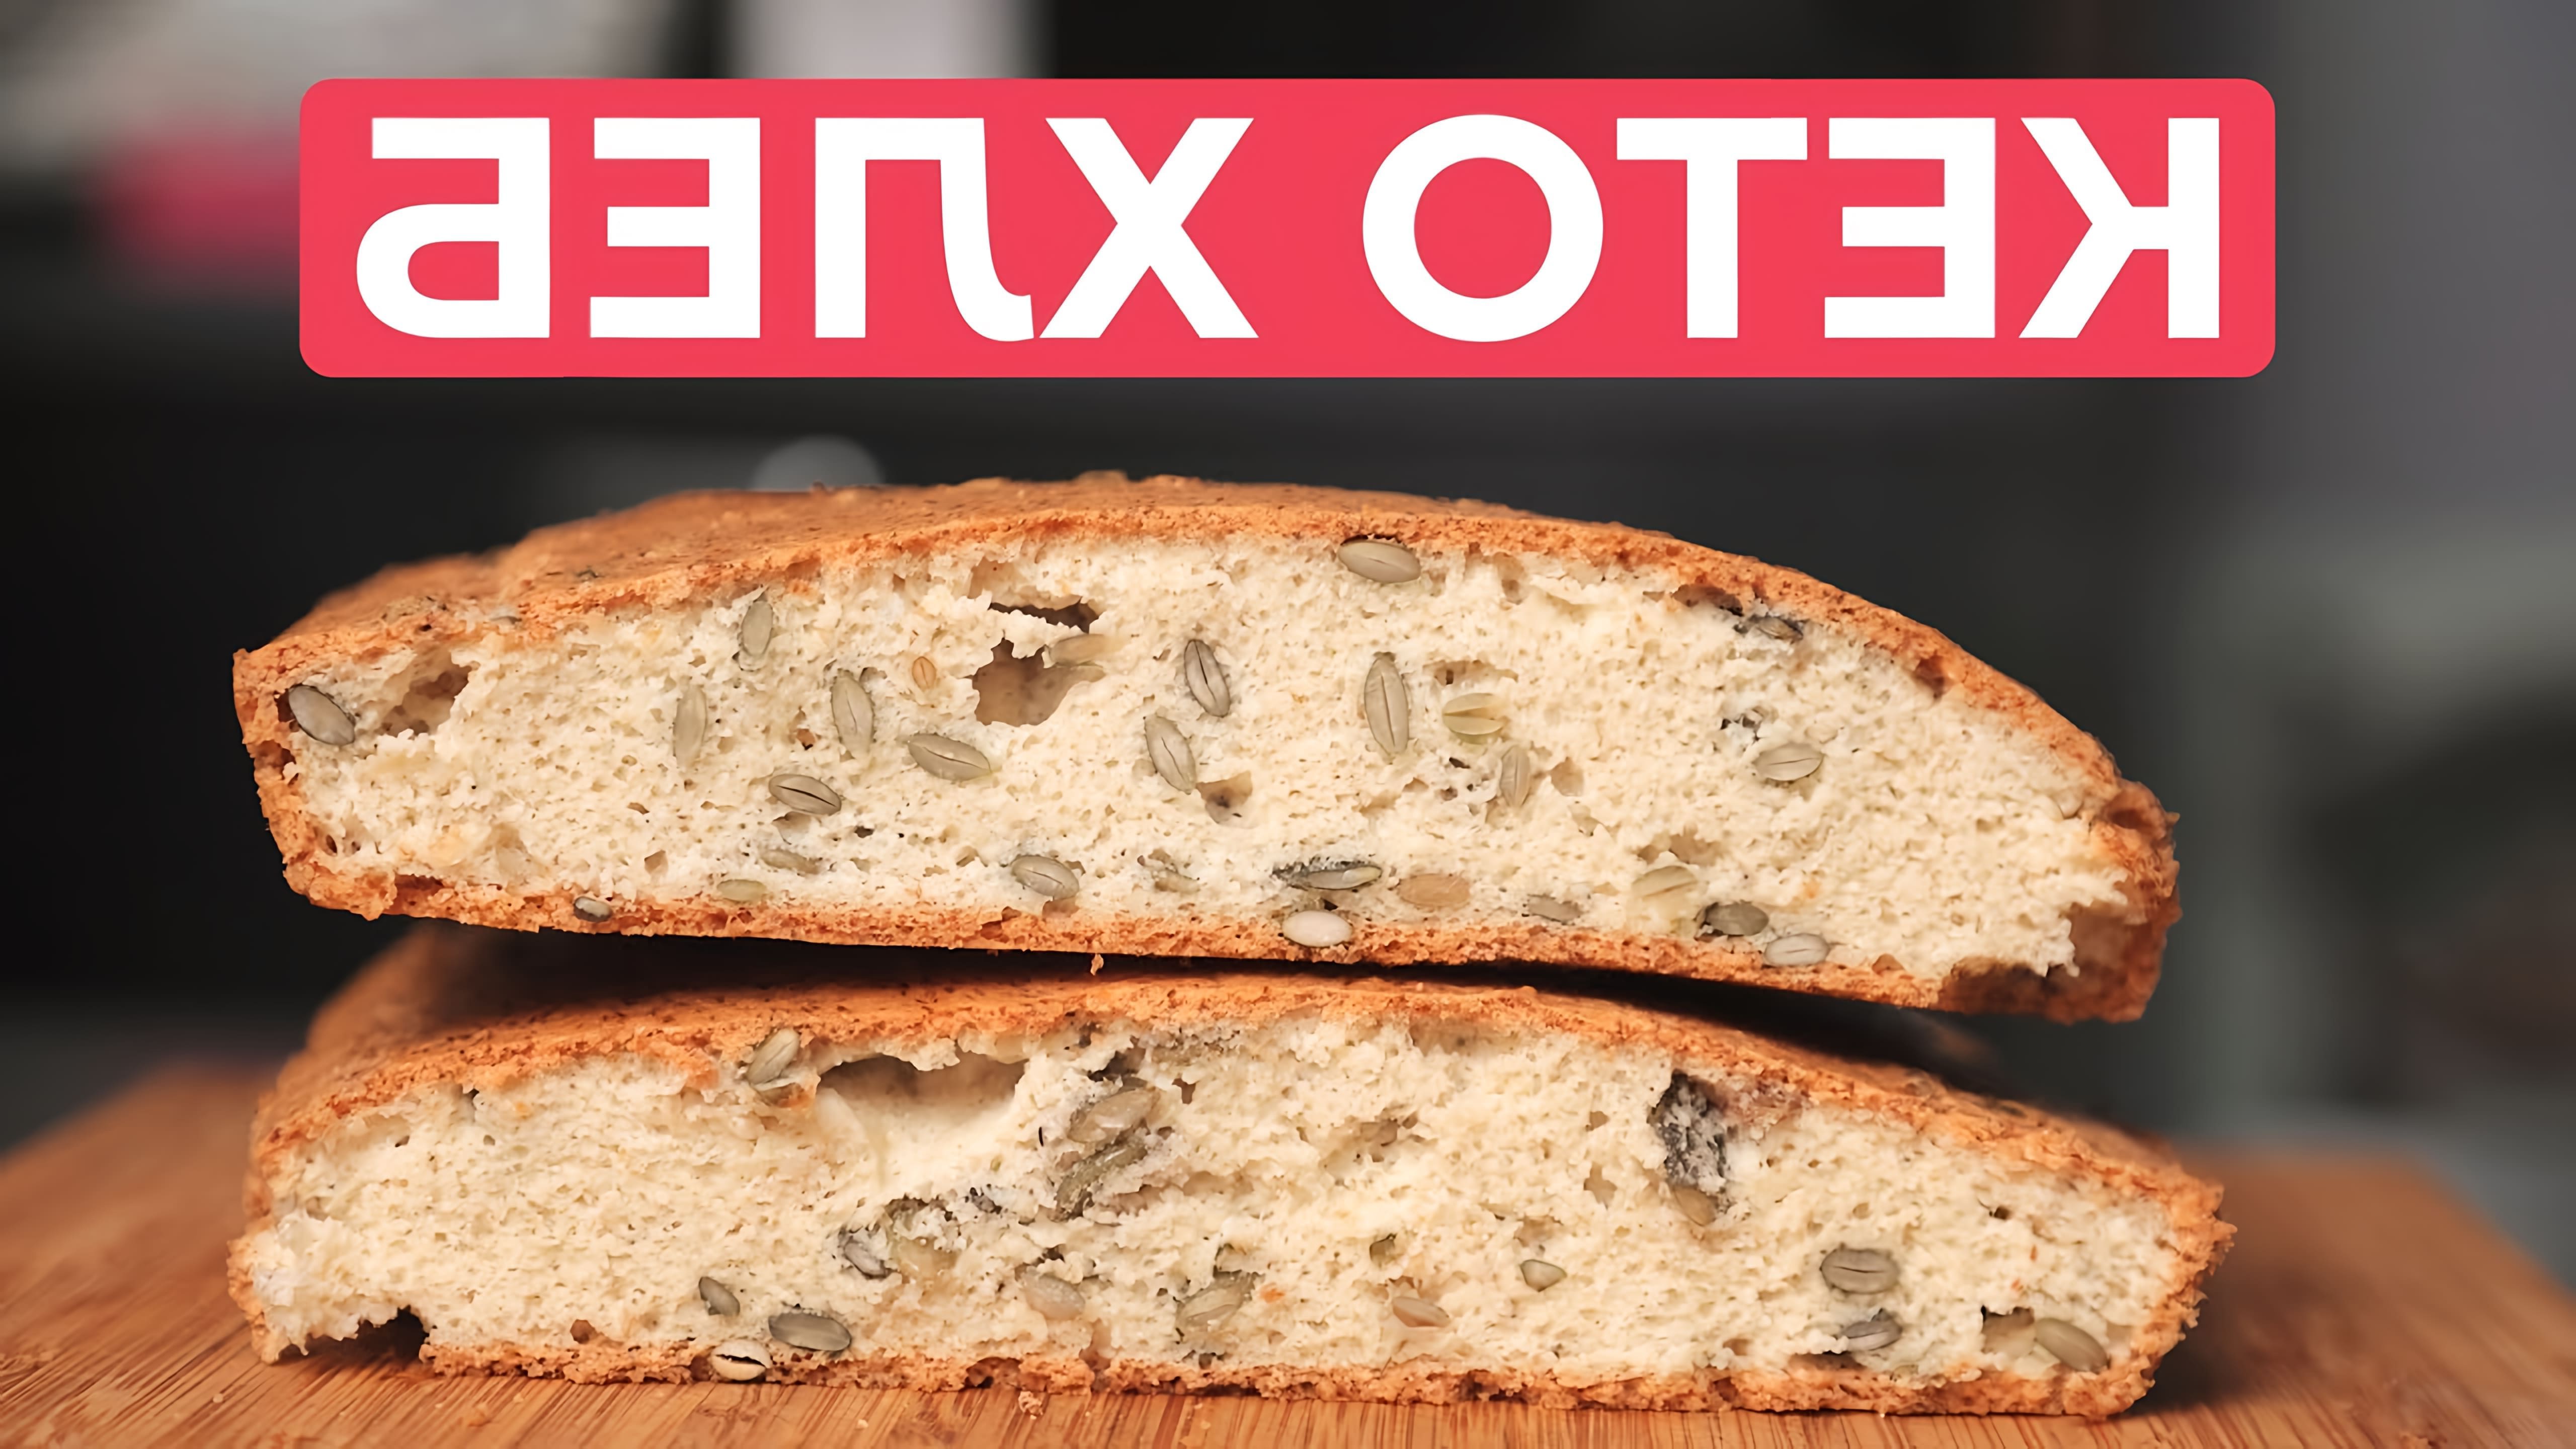 В этом видео представлен рецепт кето-хлеба, который можно приготовить без глютена и молочных продуктов